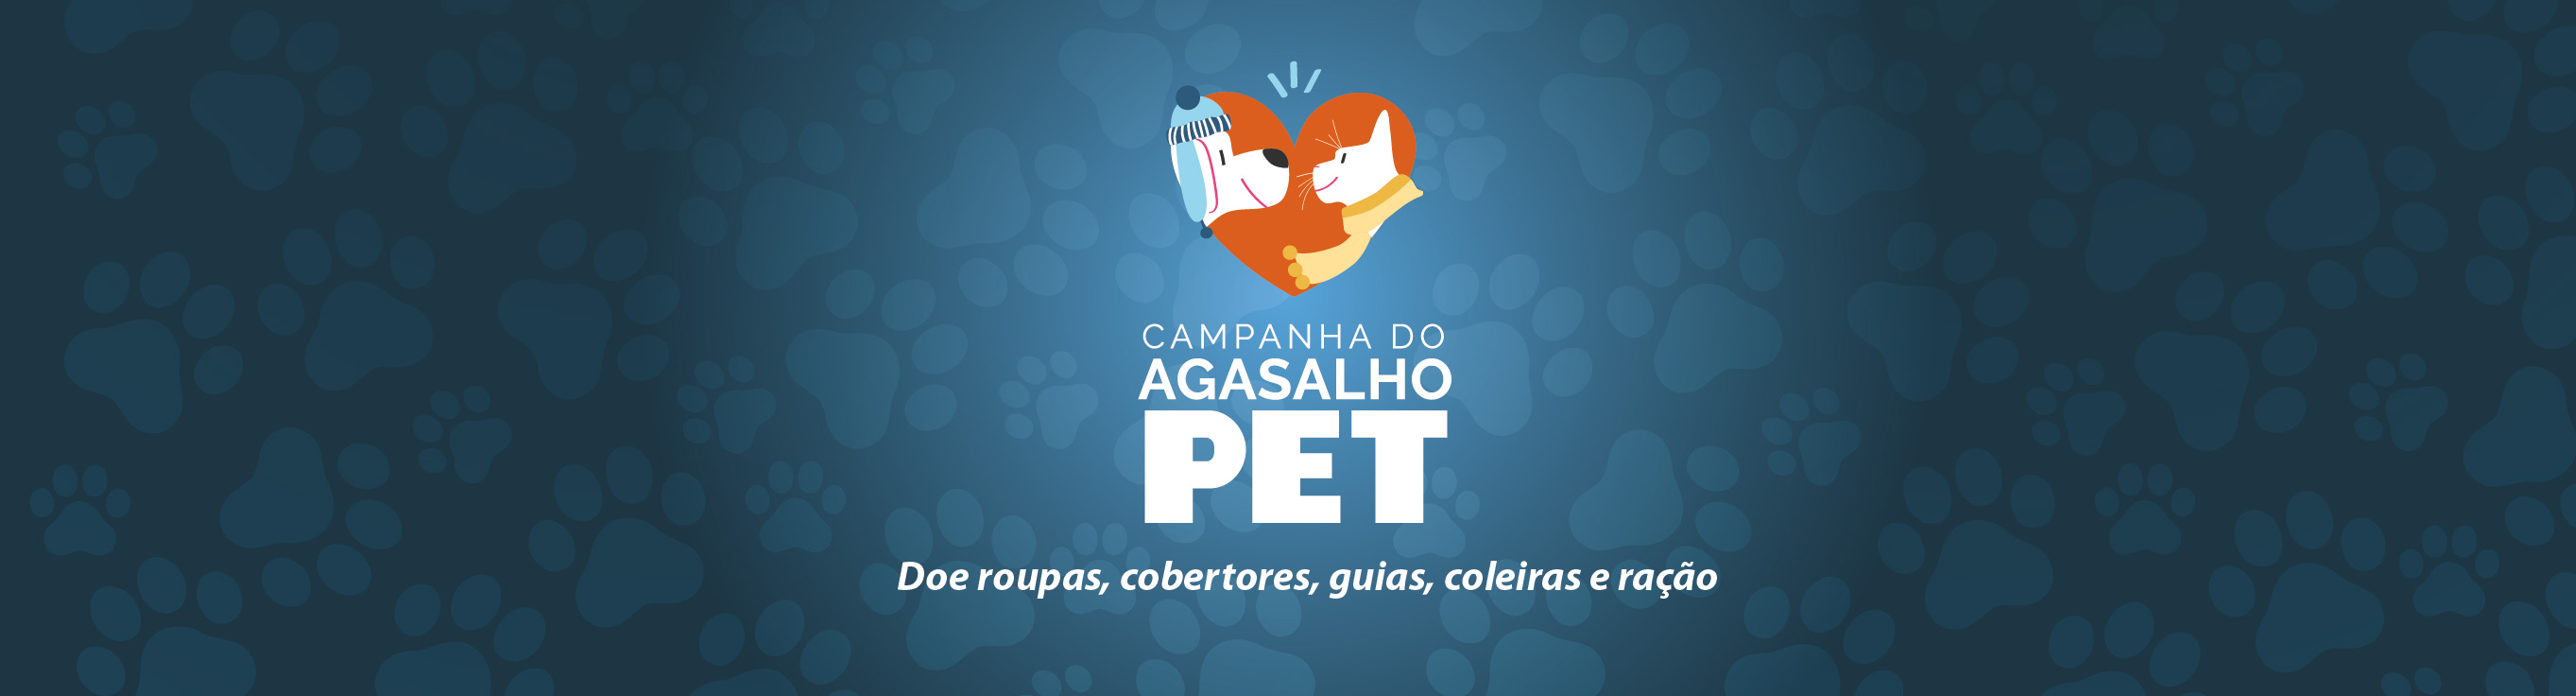 018_082_arte site_campanha do agasalho_Pet-03